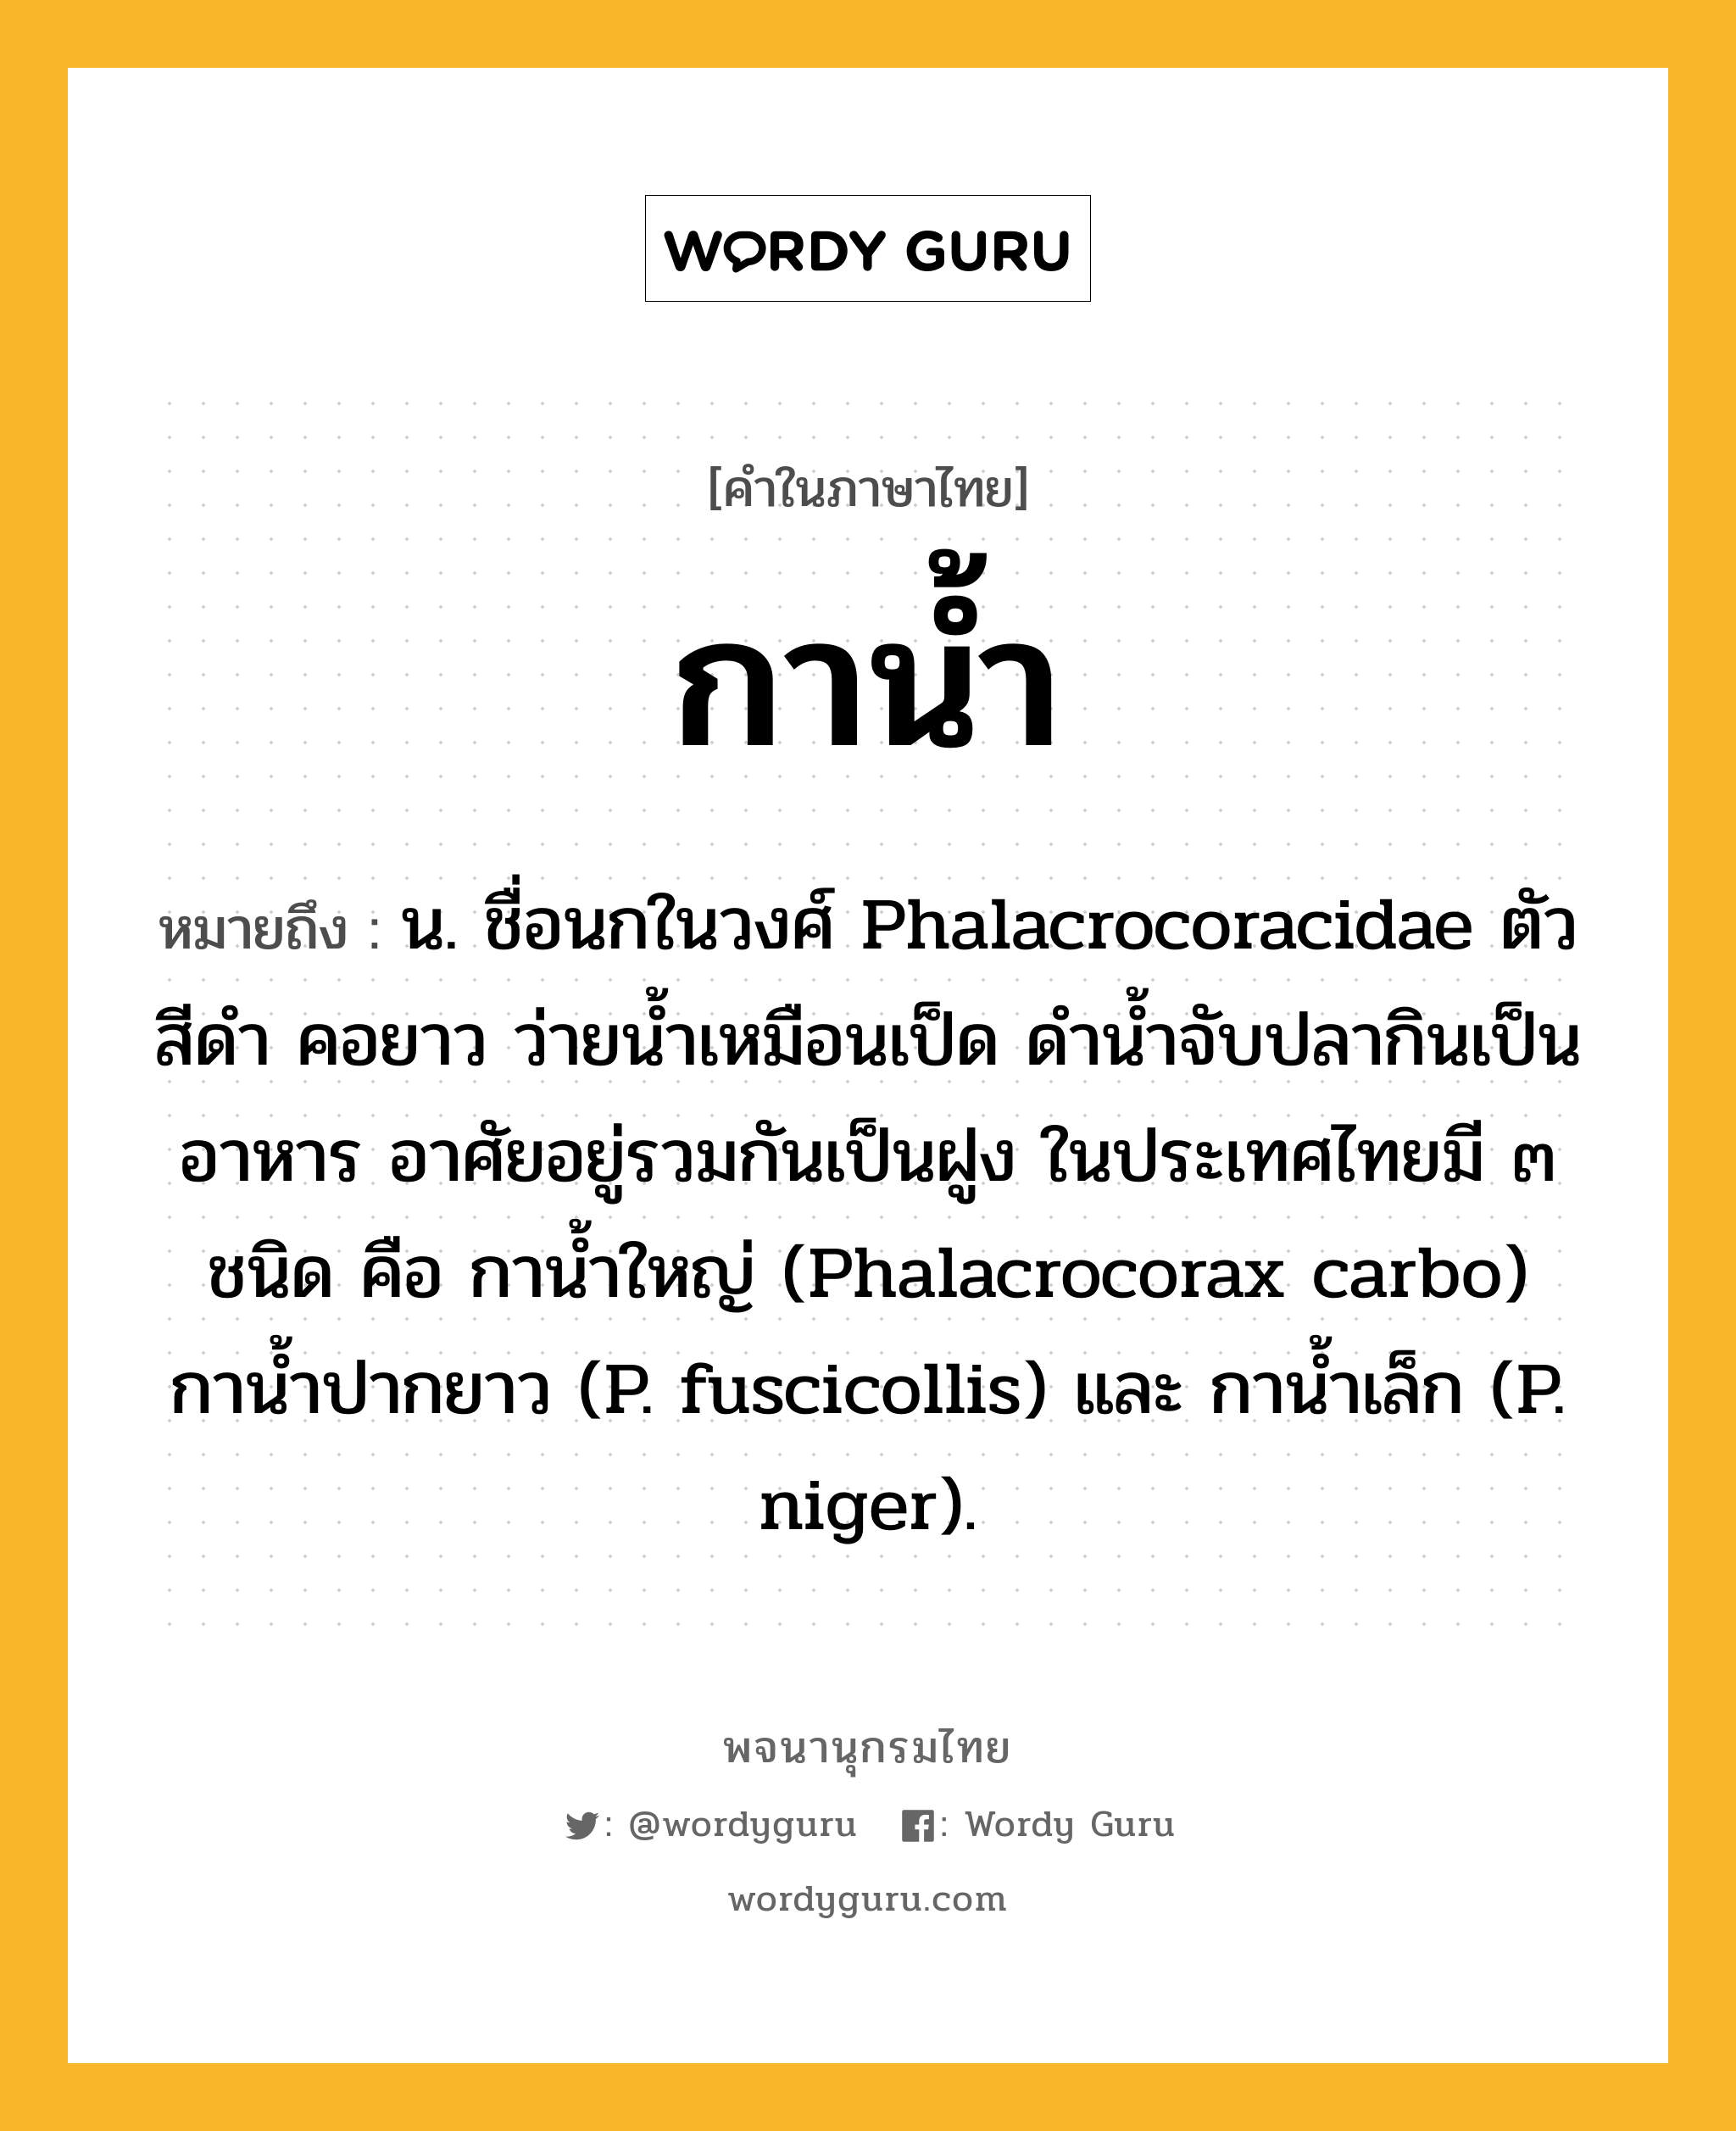 กาน้ำ หมายถึงอะไร?, คำในภาษาไทย กาน้ำ หมายถึง น. ชื่อนกในวงศ์ Phalacrocoracidae ตัวสีดํา คอยาว ว่ายนํ้าเหมือนเป็ด ดํานํ้าจับปลากินเป็นอาหาร อาศัยอยู่รวมกันเป็นฝูง ในประเทศไทยมี ๓ ชนิด คือ กานํ้าใหญ่ (Phalacrocorax carbo) กานํ้าปากยาว (P. fuscicollis) และ กานํ้าเล็ก (P. niger).